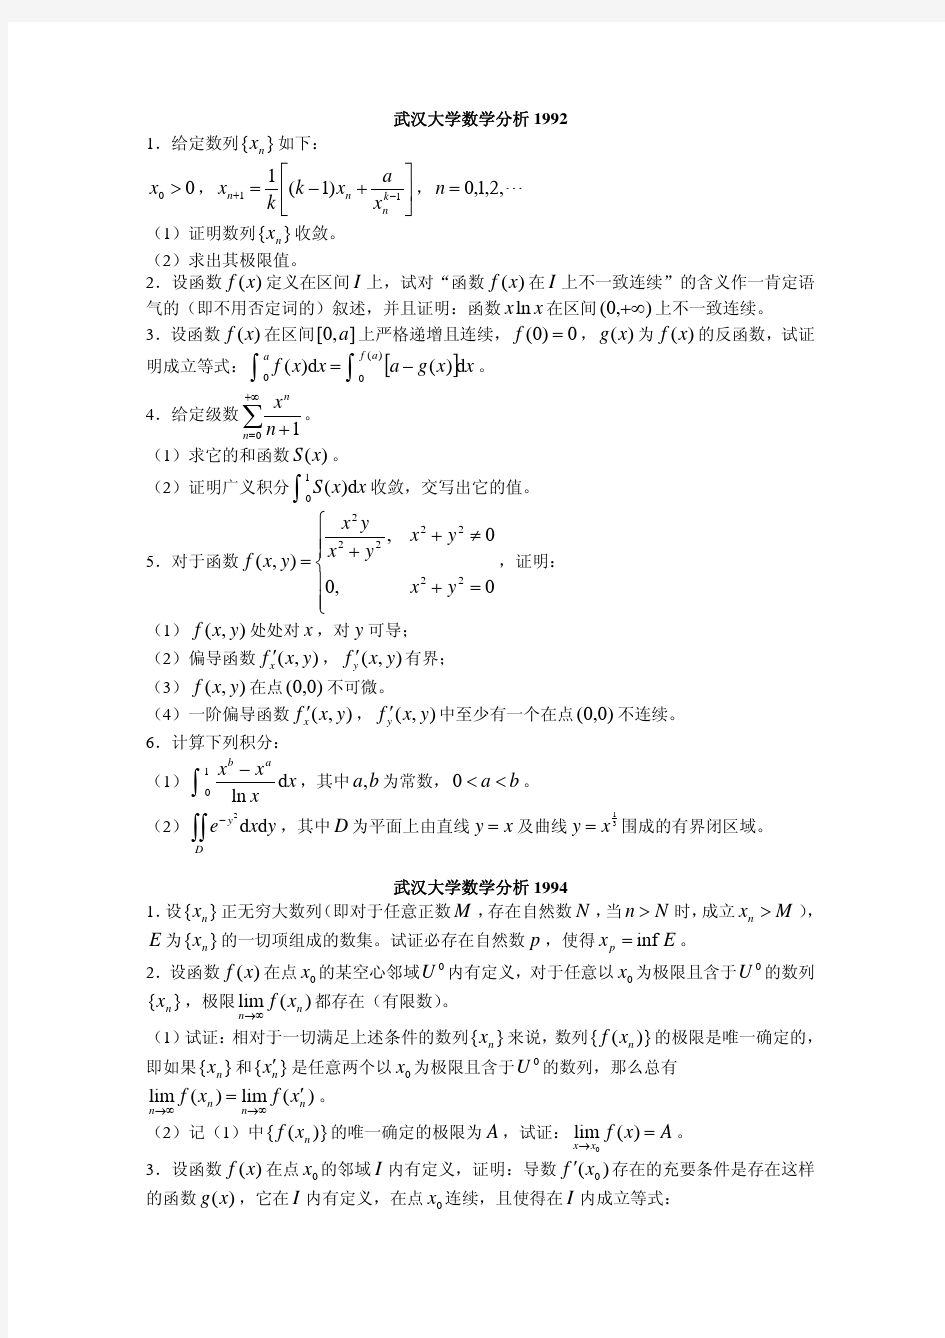 [考试必备]武汉大学数学分析考研试题集锦(1992,1994-2012年)